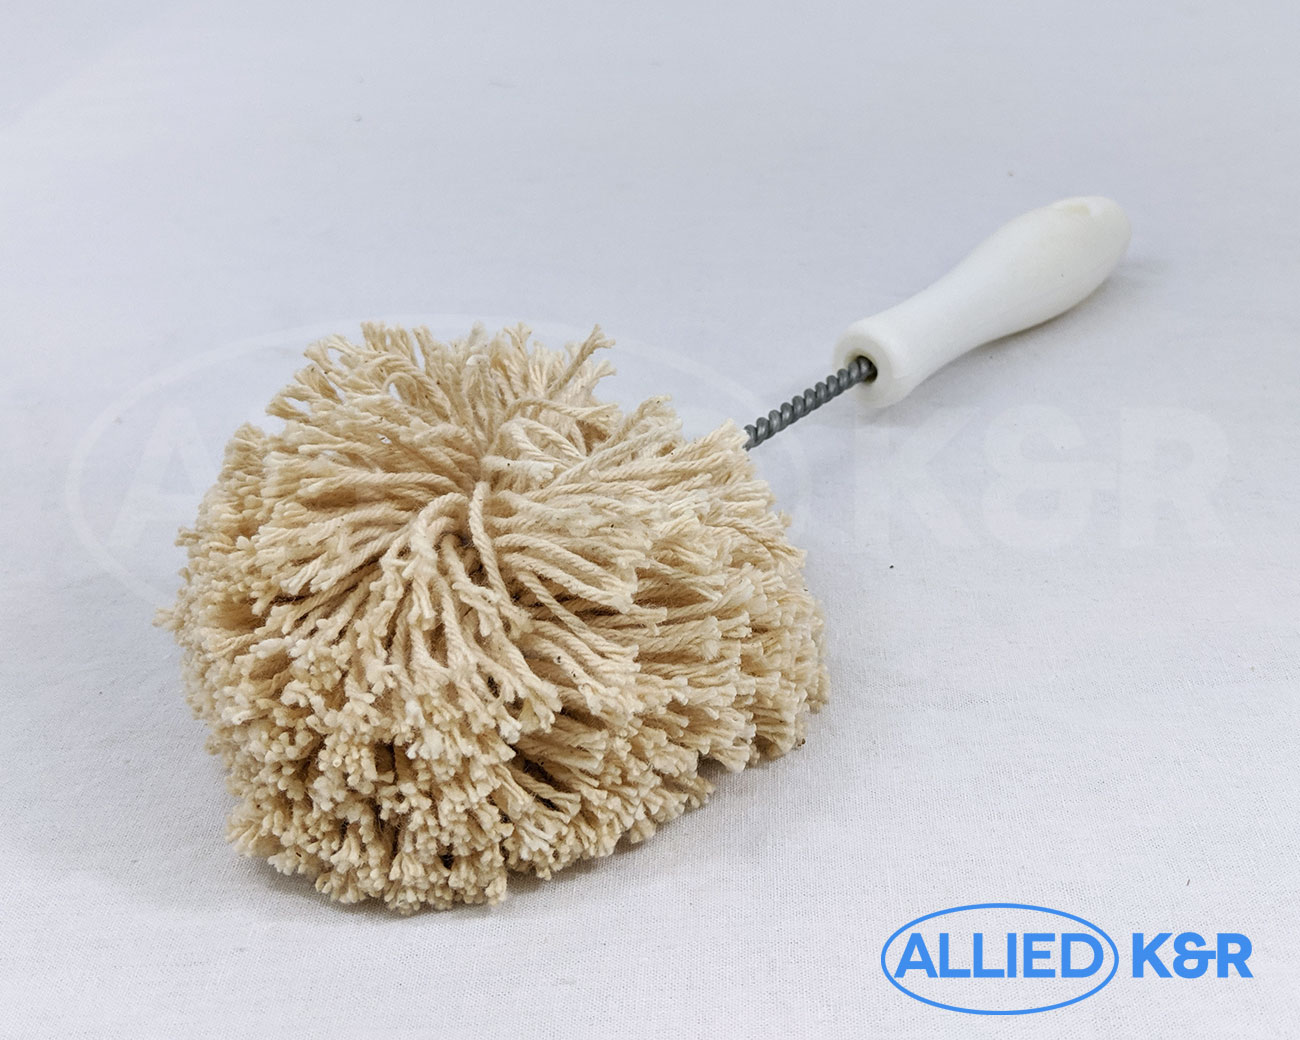 https://alliedkr.com/siteber/wp-content/uploads/2019/11/Cotton-dish-mop-handle-950030-front.jpg